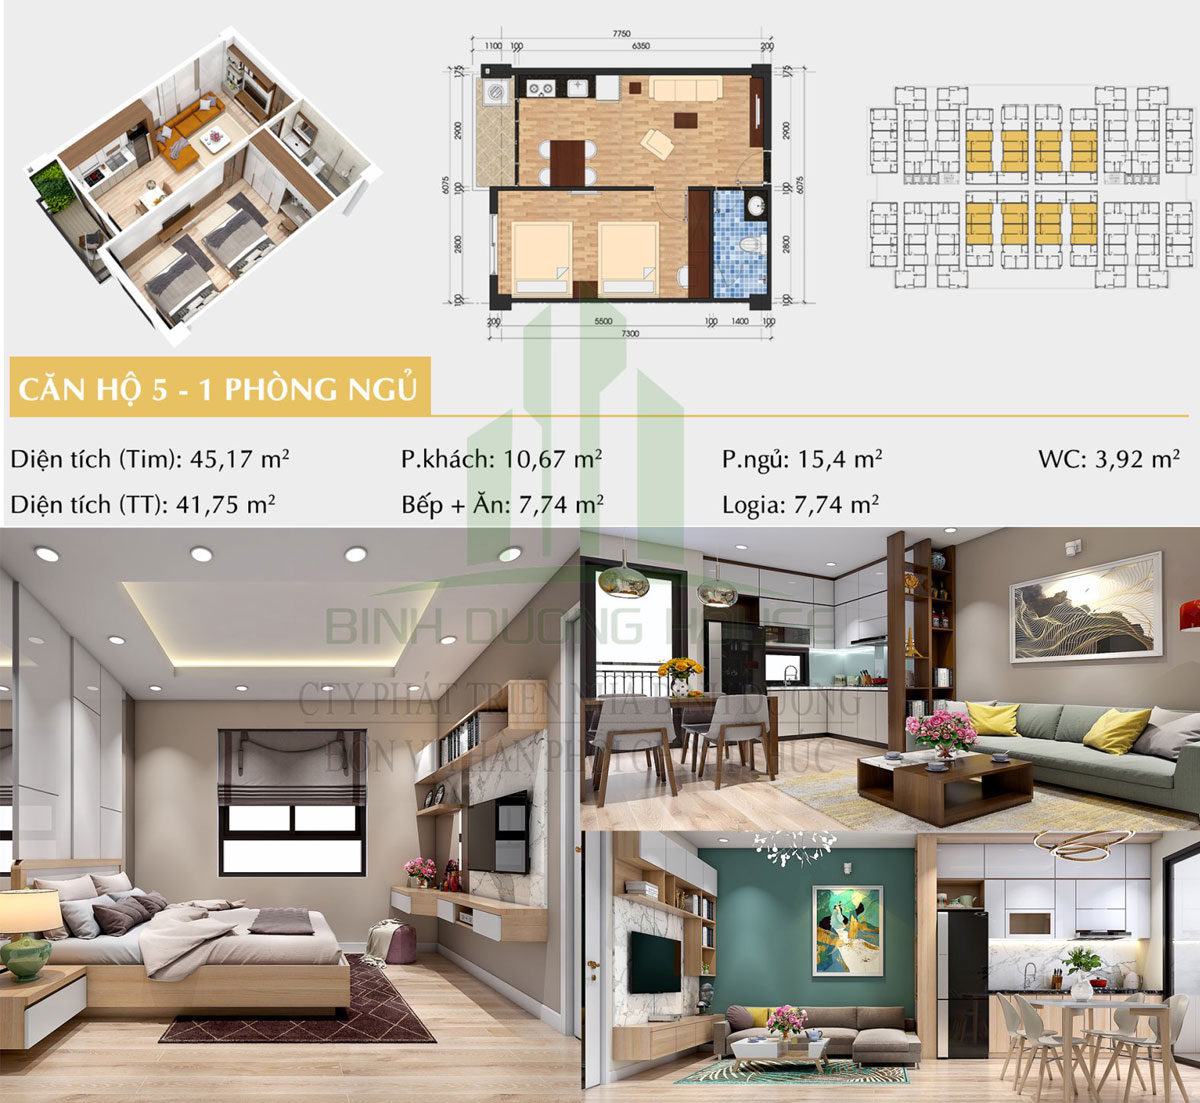 Thiết kế căn hộ loại 5 - 1 phòng ngủ - Unico Thăng Long Bình Dương